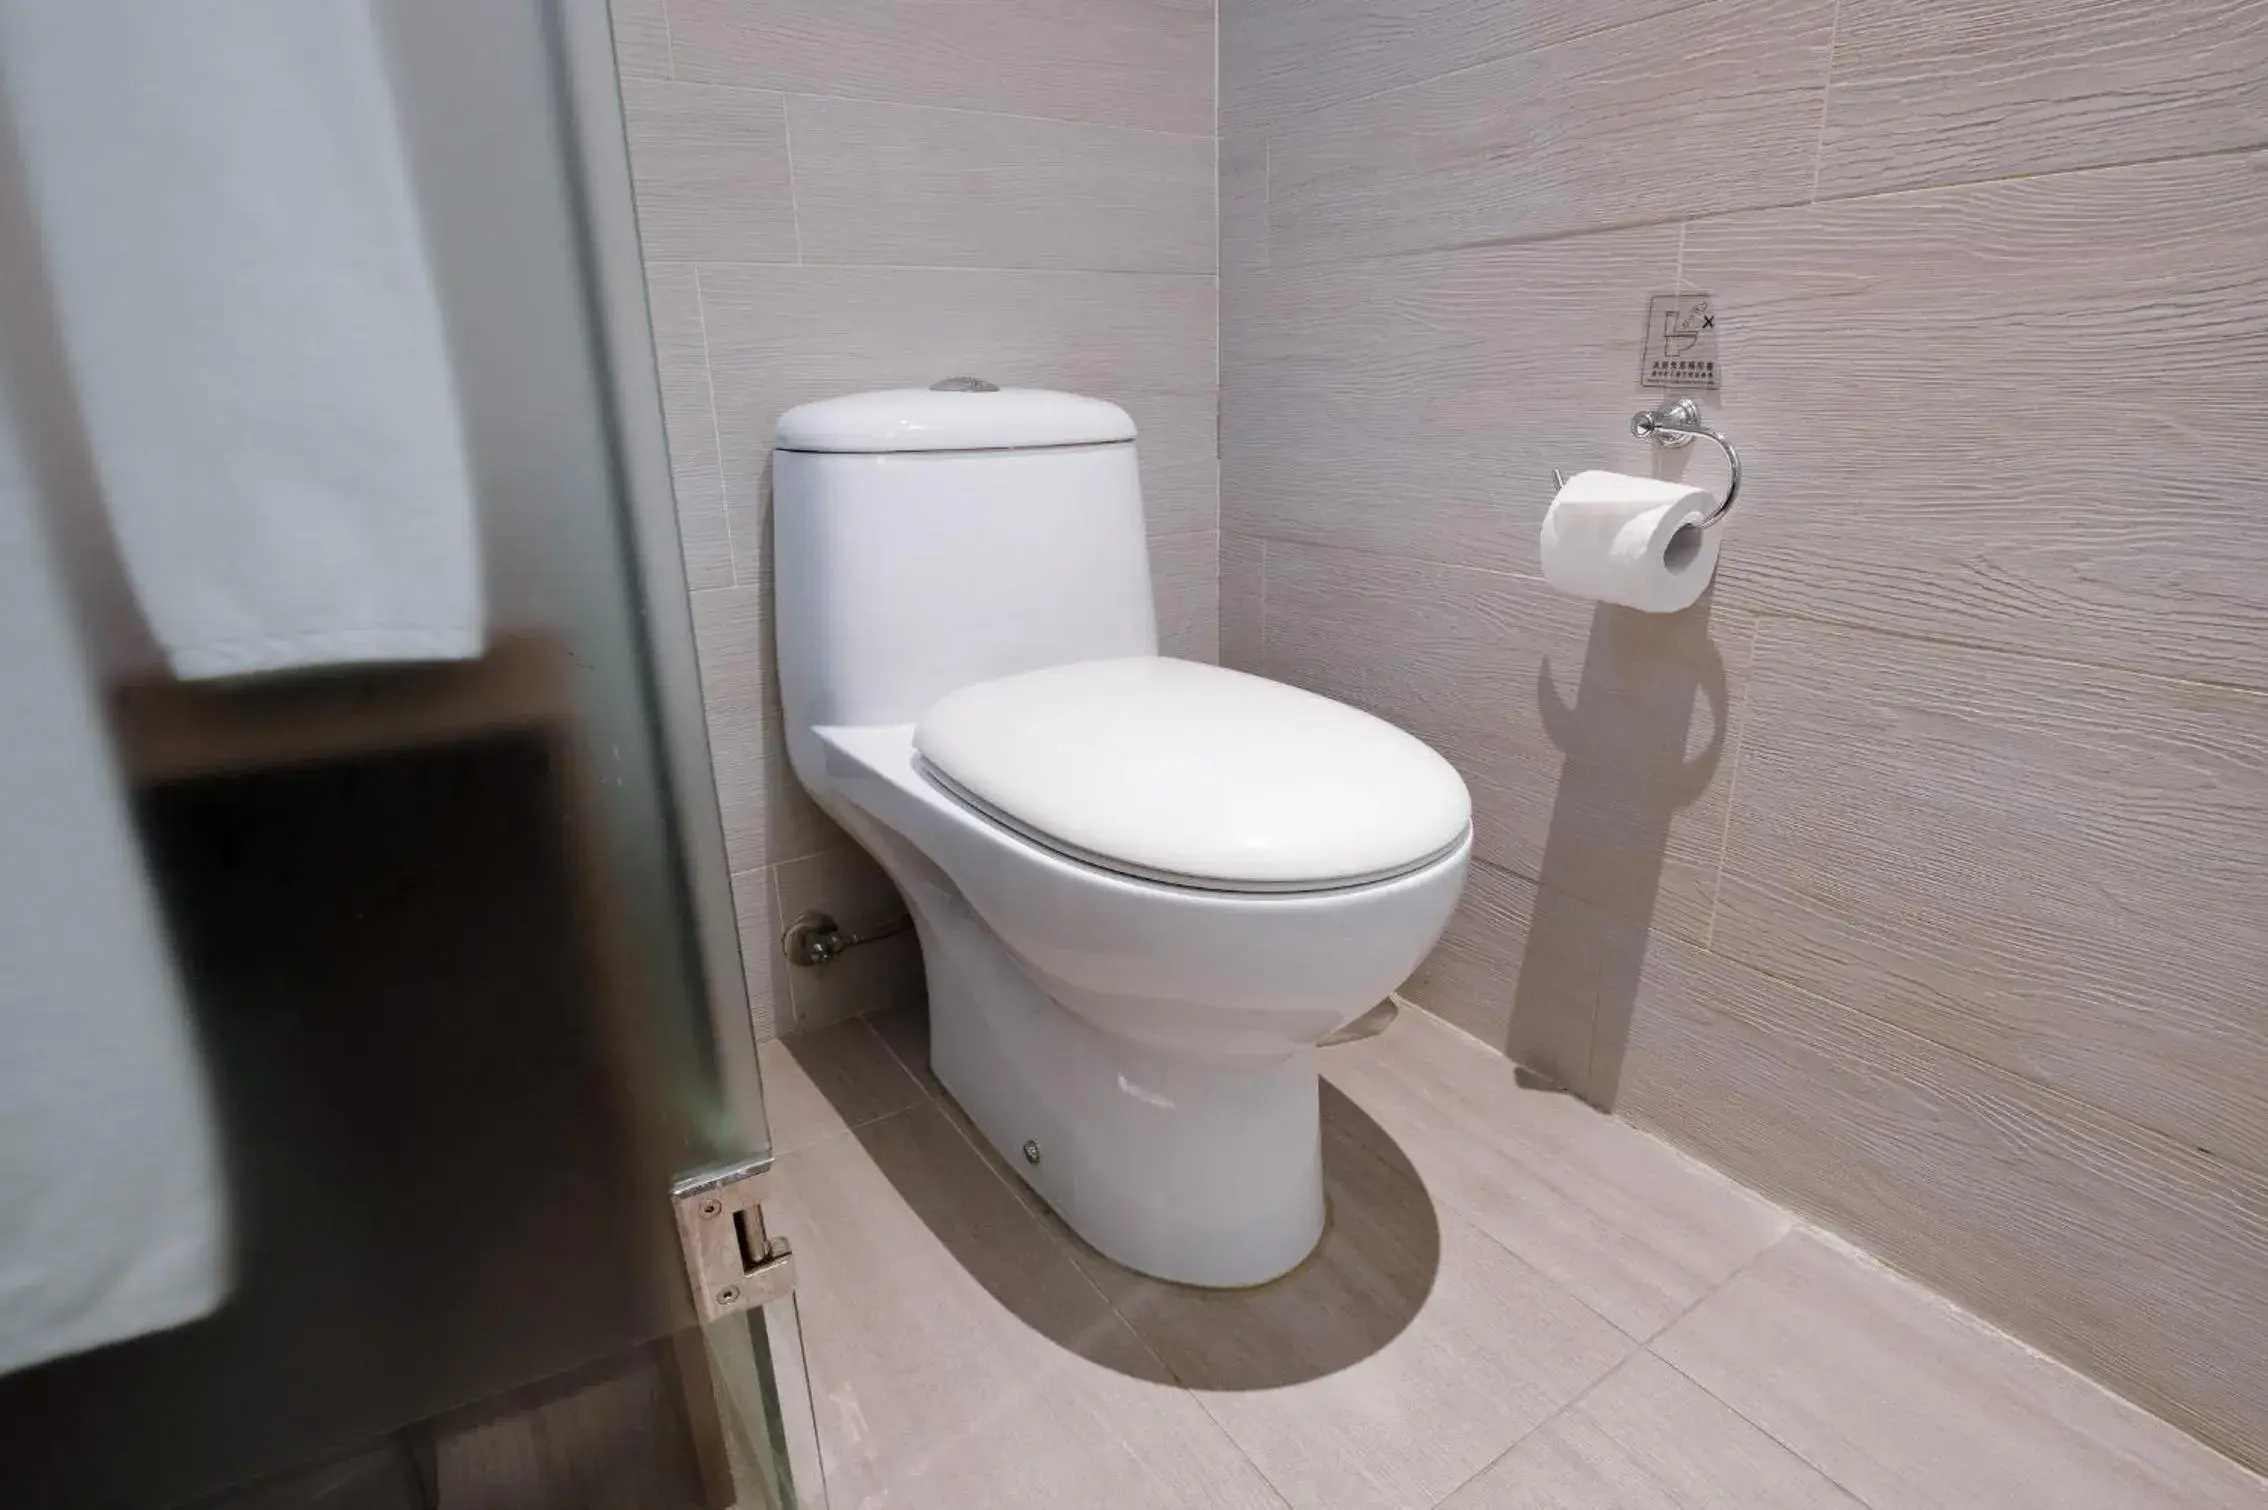 Bathroom in CHECK inn Taipei Xinyi (Quarantine Hotel)